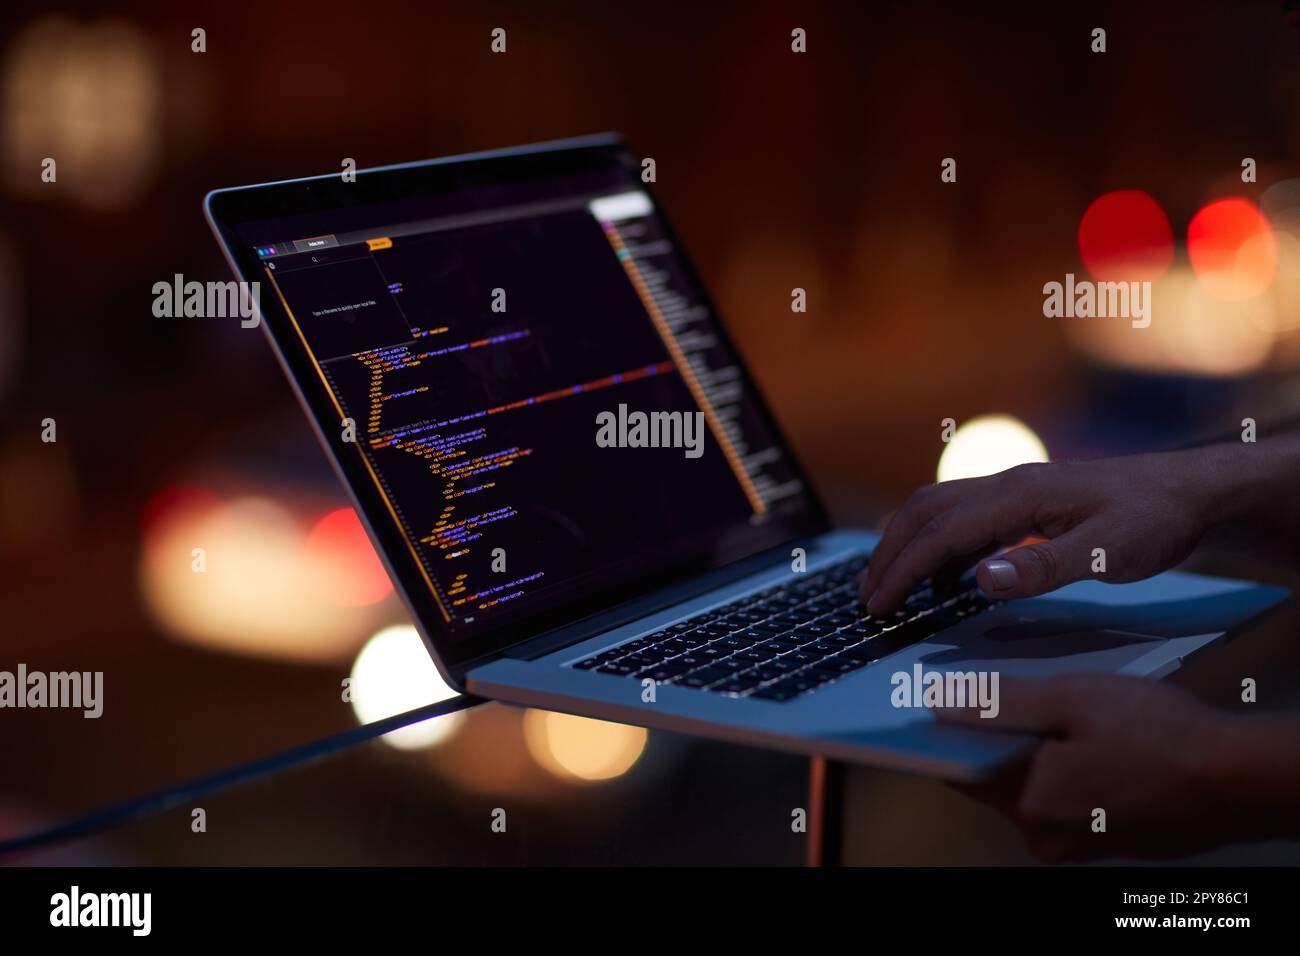 Werden Sie nicht zum nächsten Opfer von Cyberkriminalität. Ein nicht erkennbarer Hacker, der im Dunkeln einen Laptop benutzt. Stockfoto